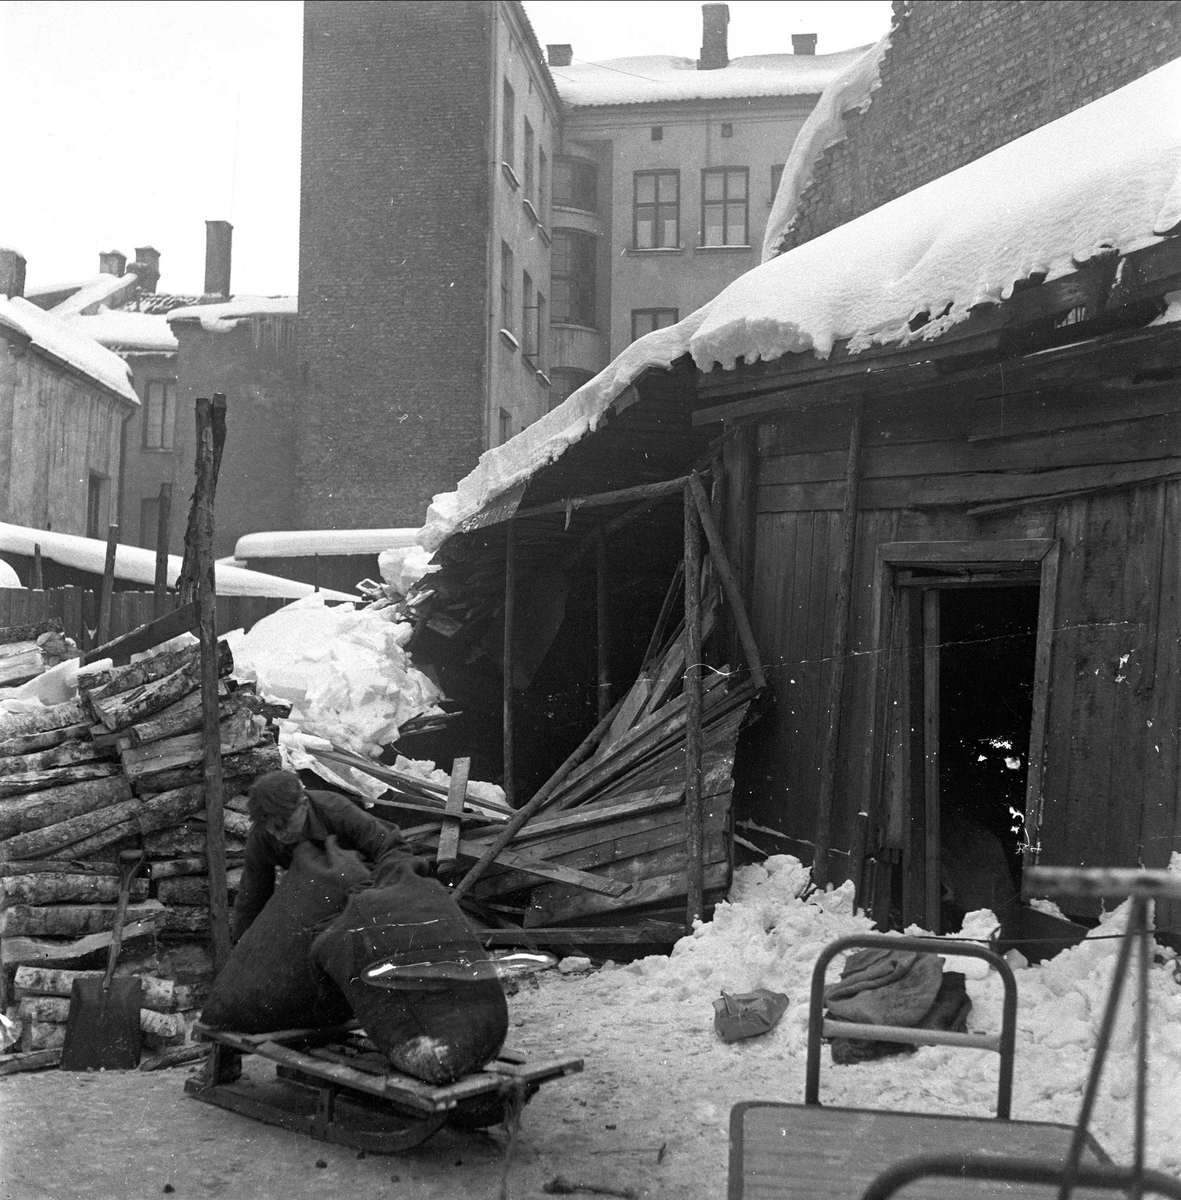 Snø i byen, Oslo, februar, 1959. Vedlager.